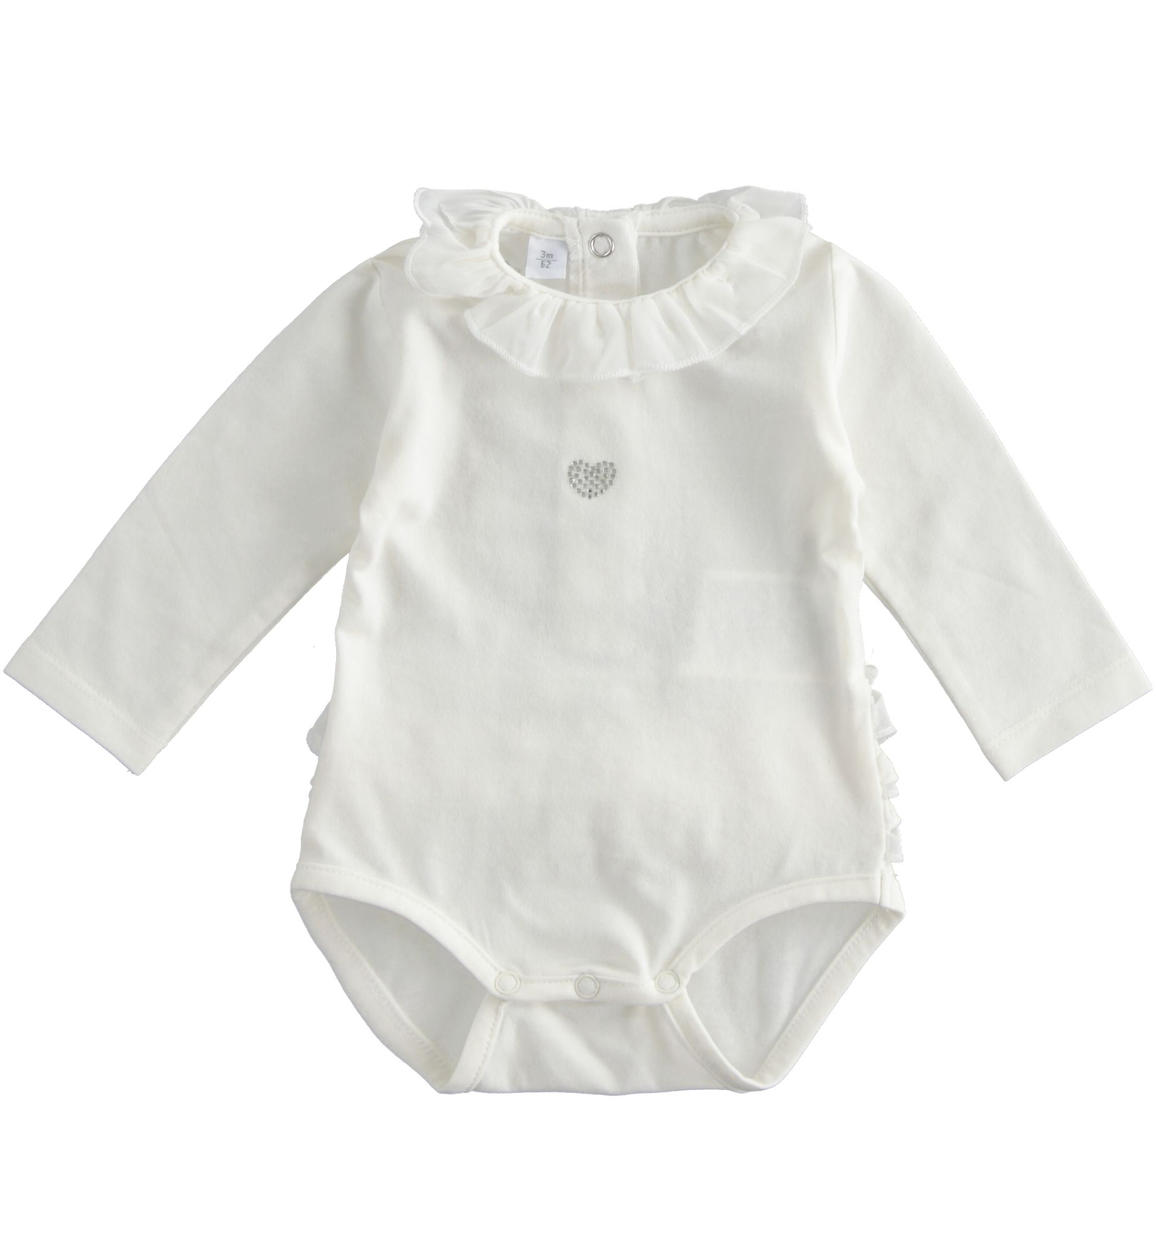 Elegante body a manica lunga in jersey stretch per neonata da 0 a 18 mesi  iDO